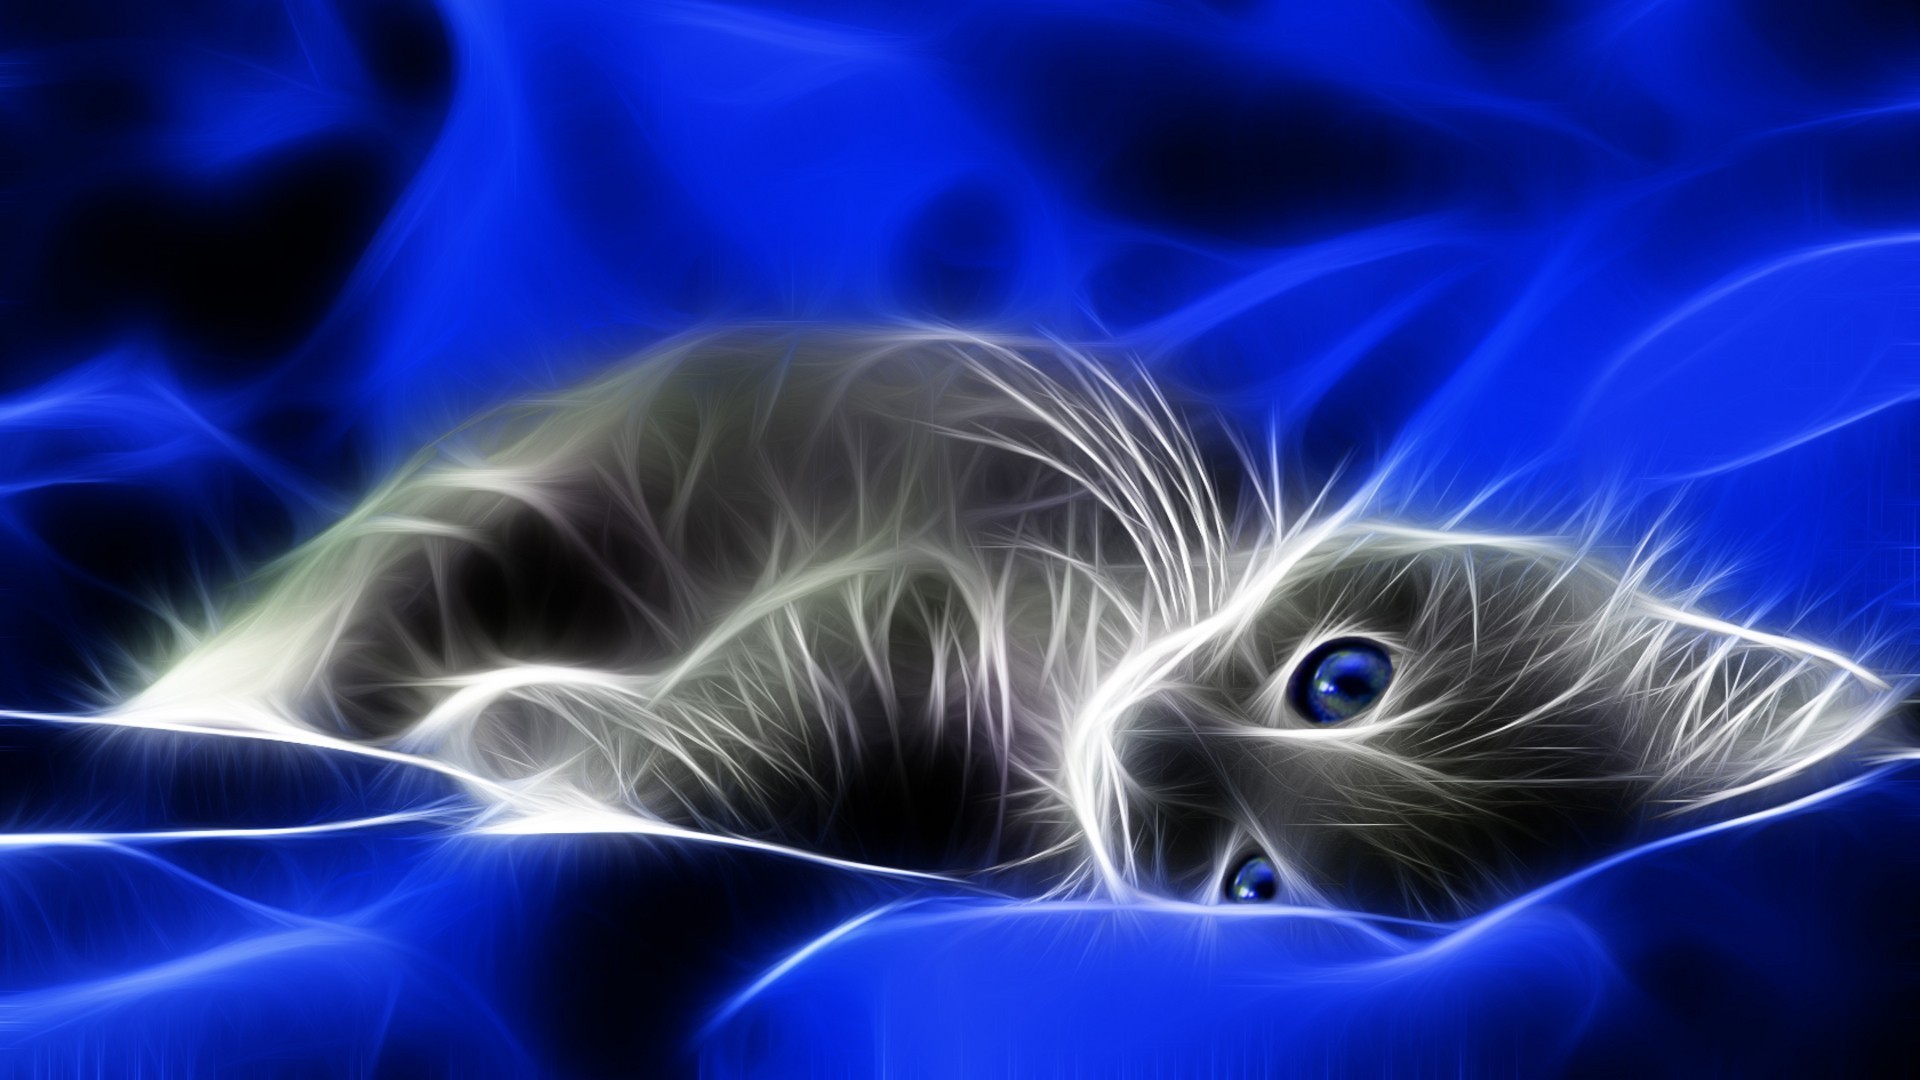 1920x1080 Blue cats digital art artwork kittens wallpaper